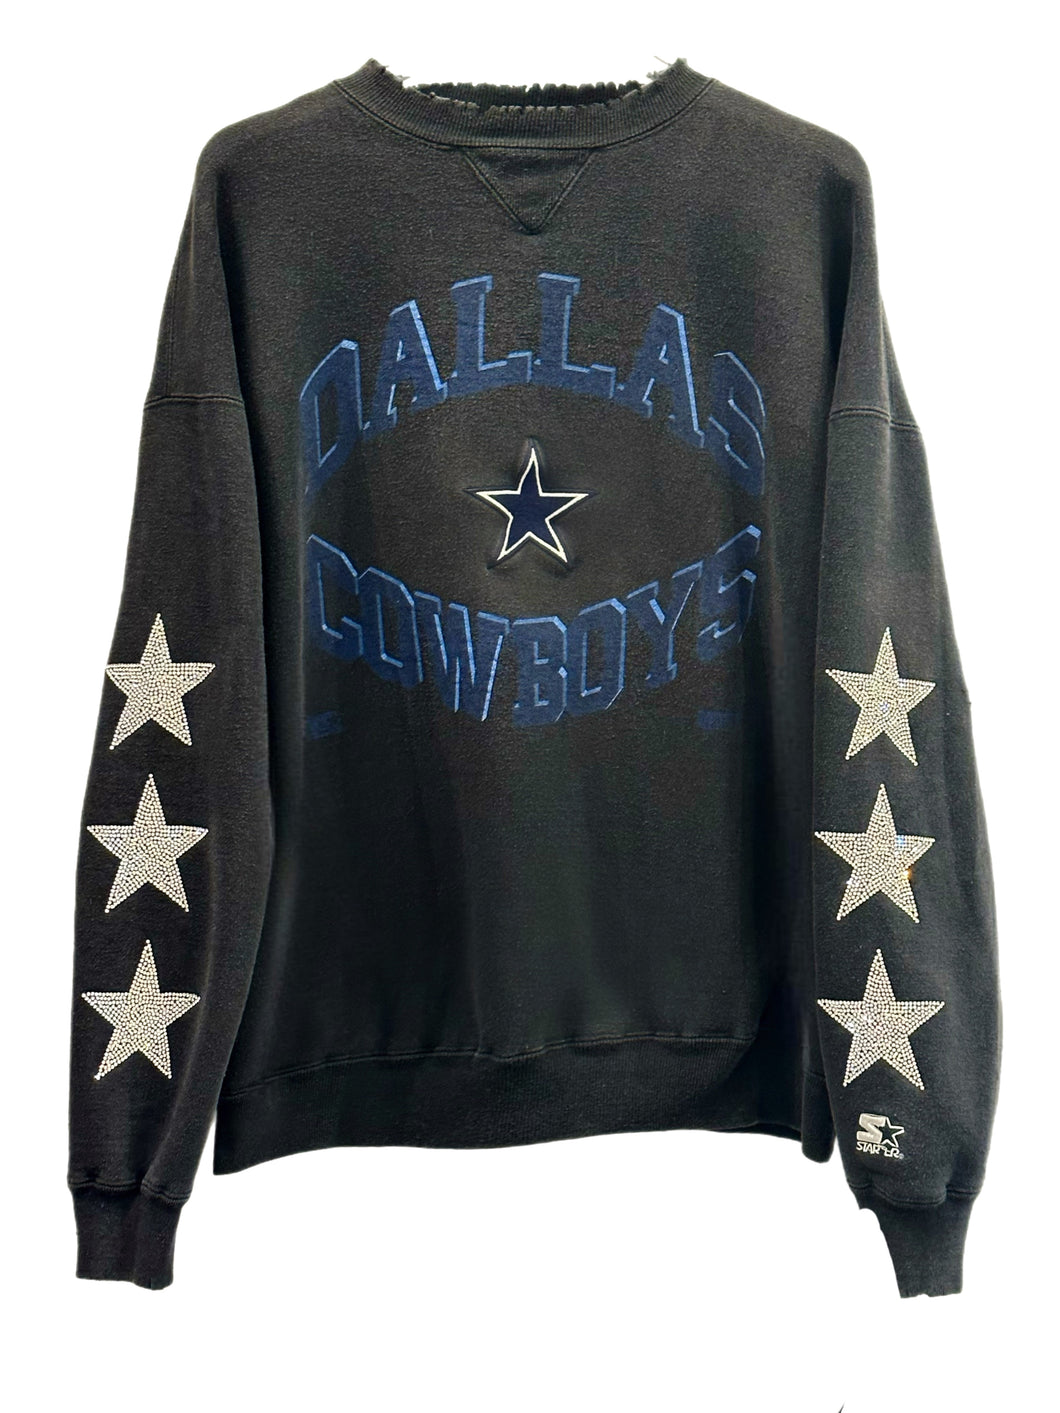 Vintage 90s Dallas Cowboys Sweatshirt Crewneck NFL